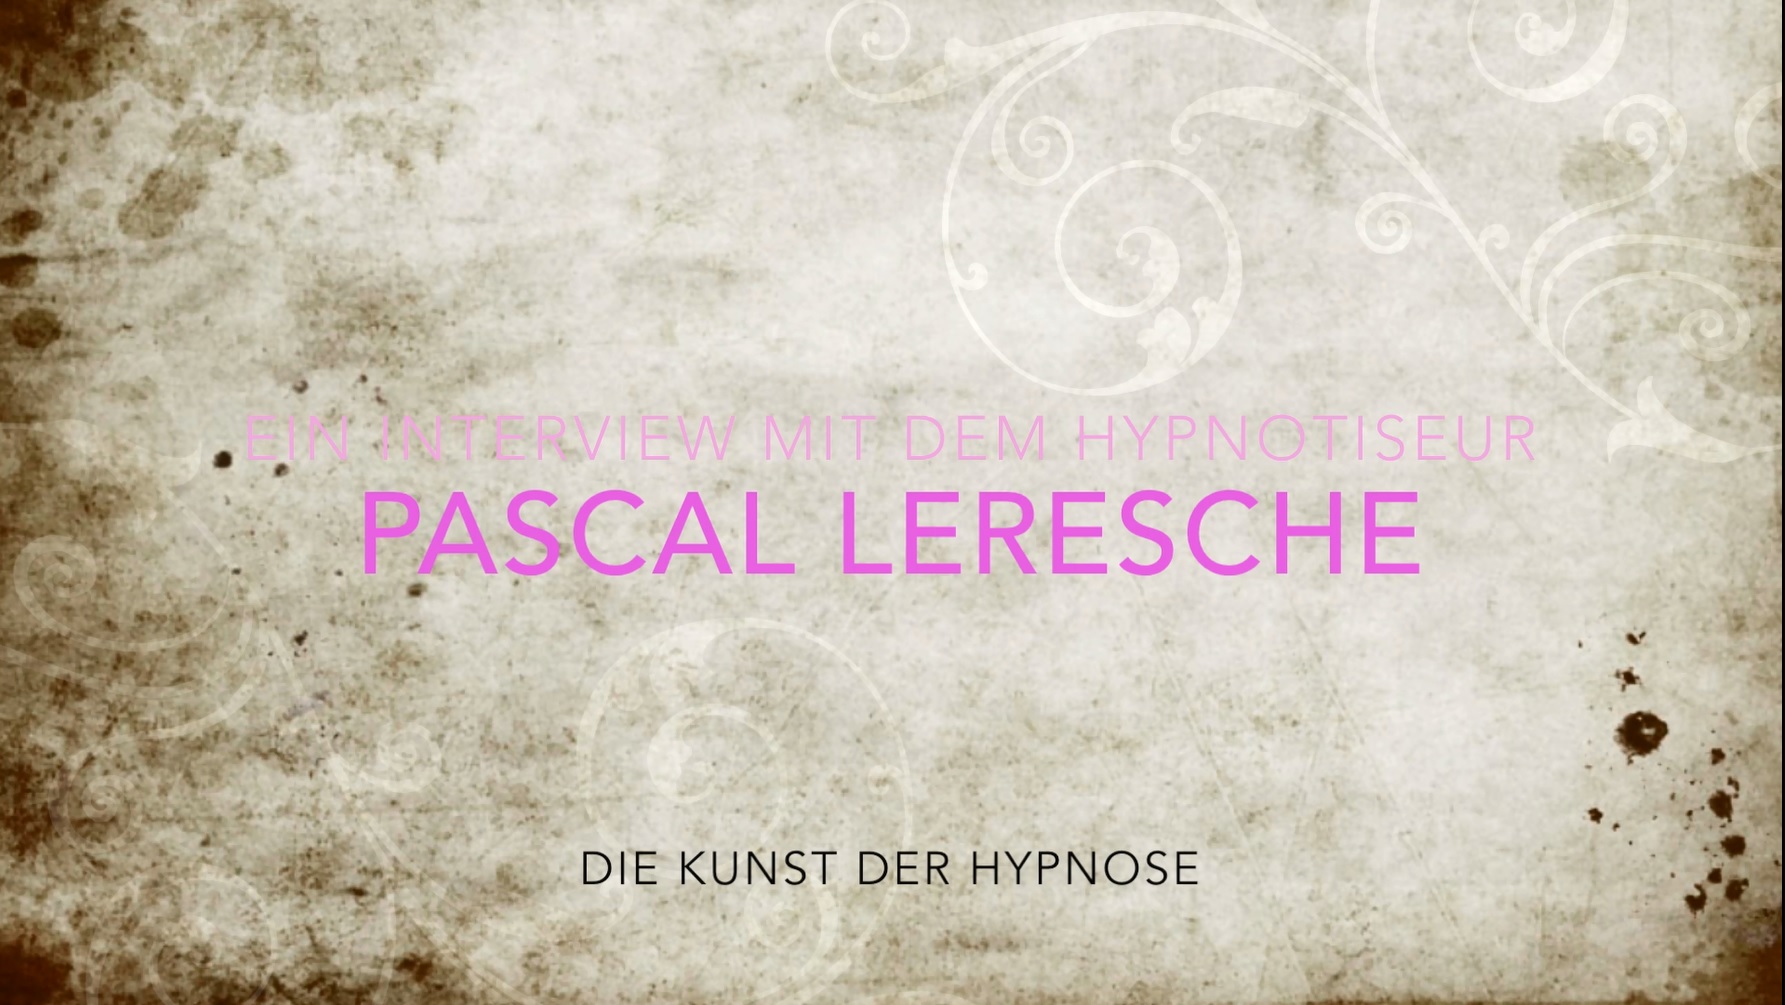 Projektarbeit über Hypnose und Hypnosetherapie (Videodokumentation)